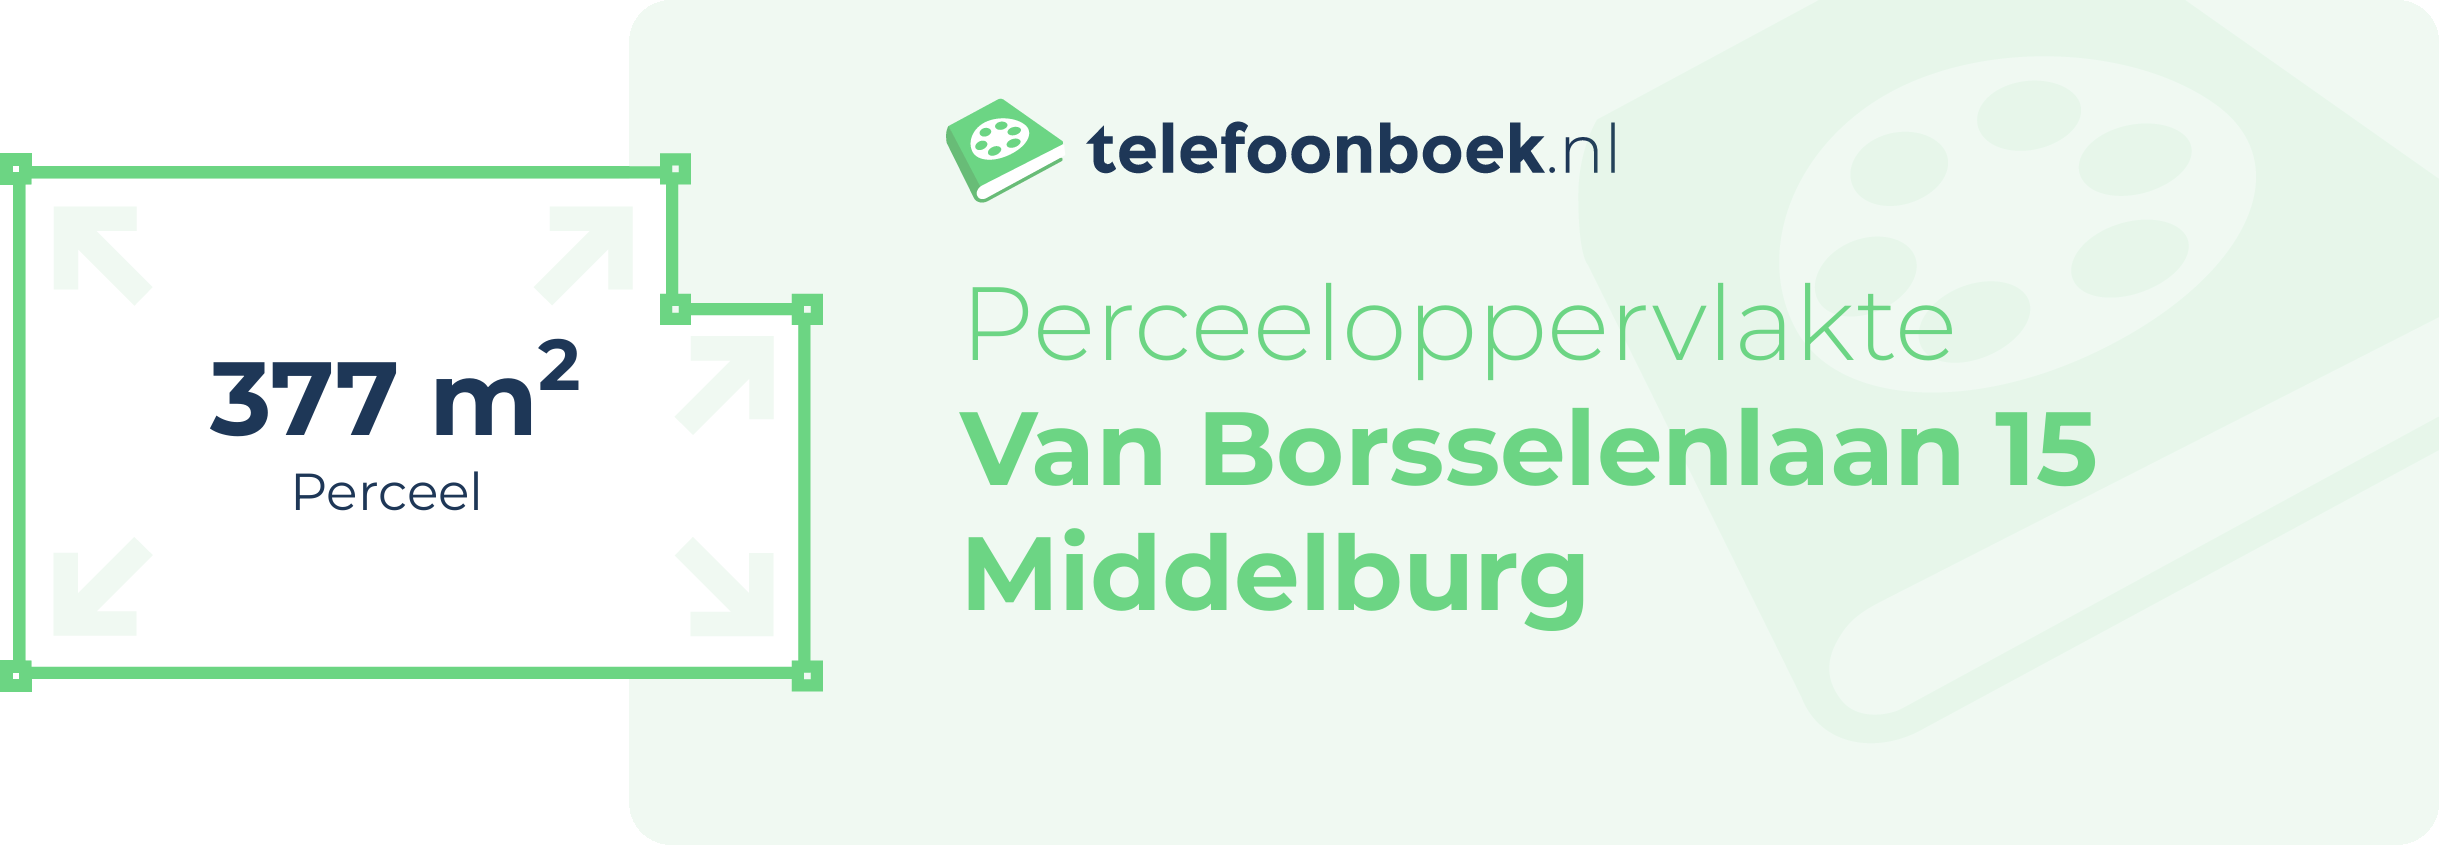 Perceeloppervlakte Van Borsselenlaan 15 Middelburg